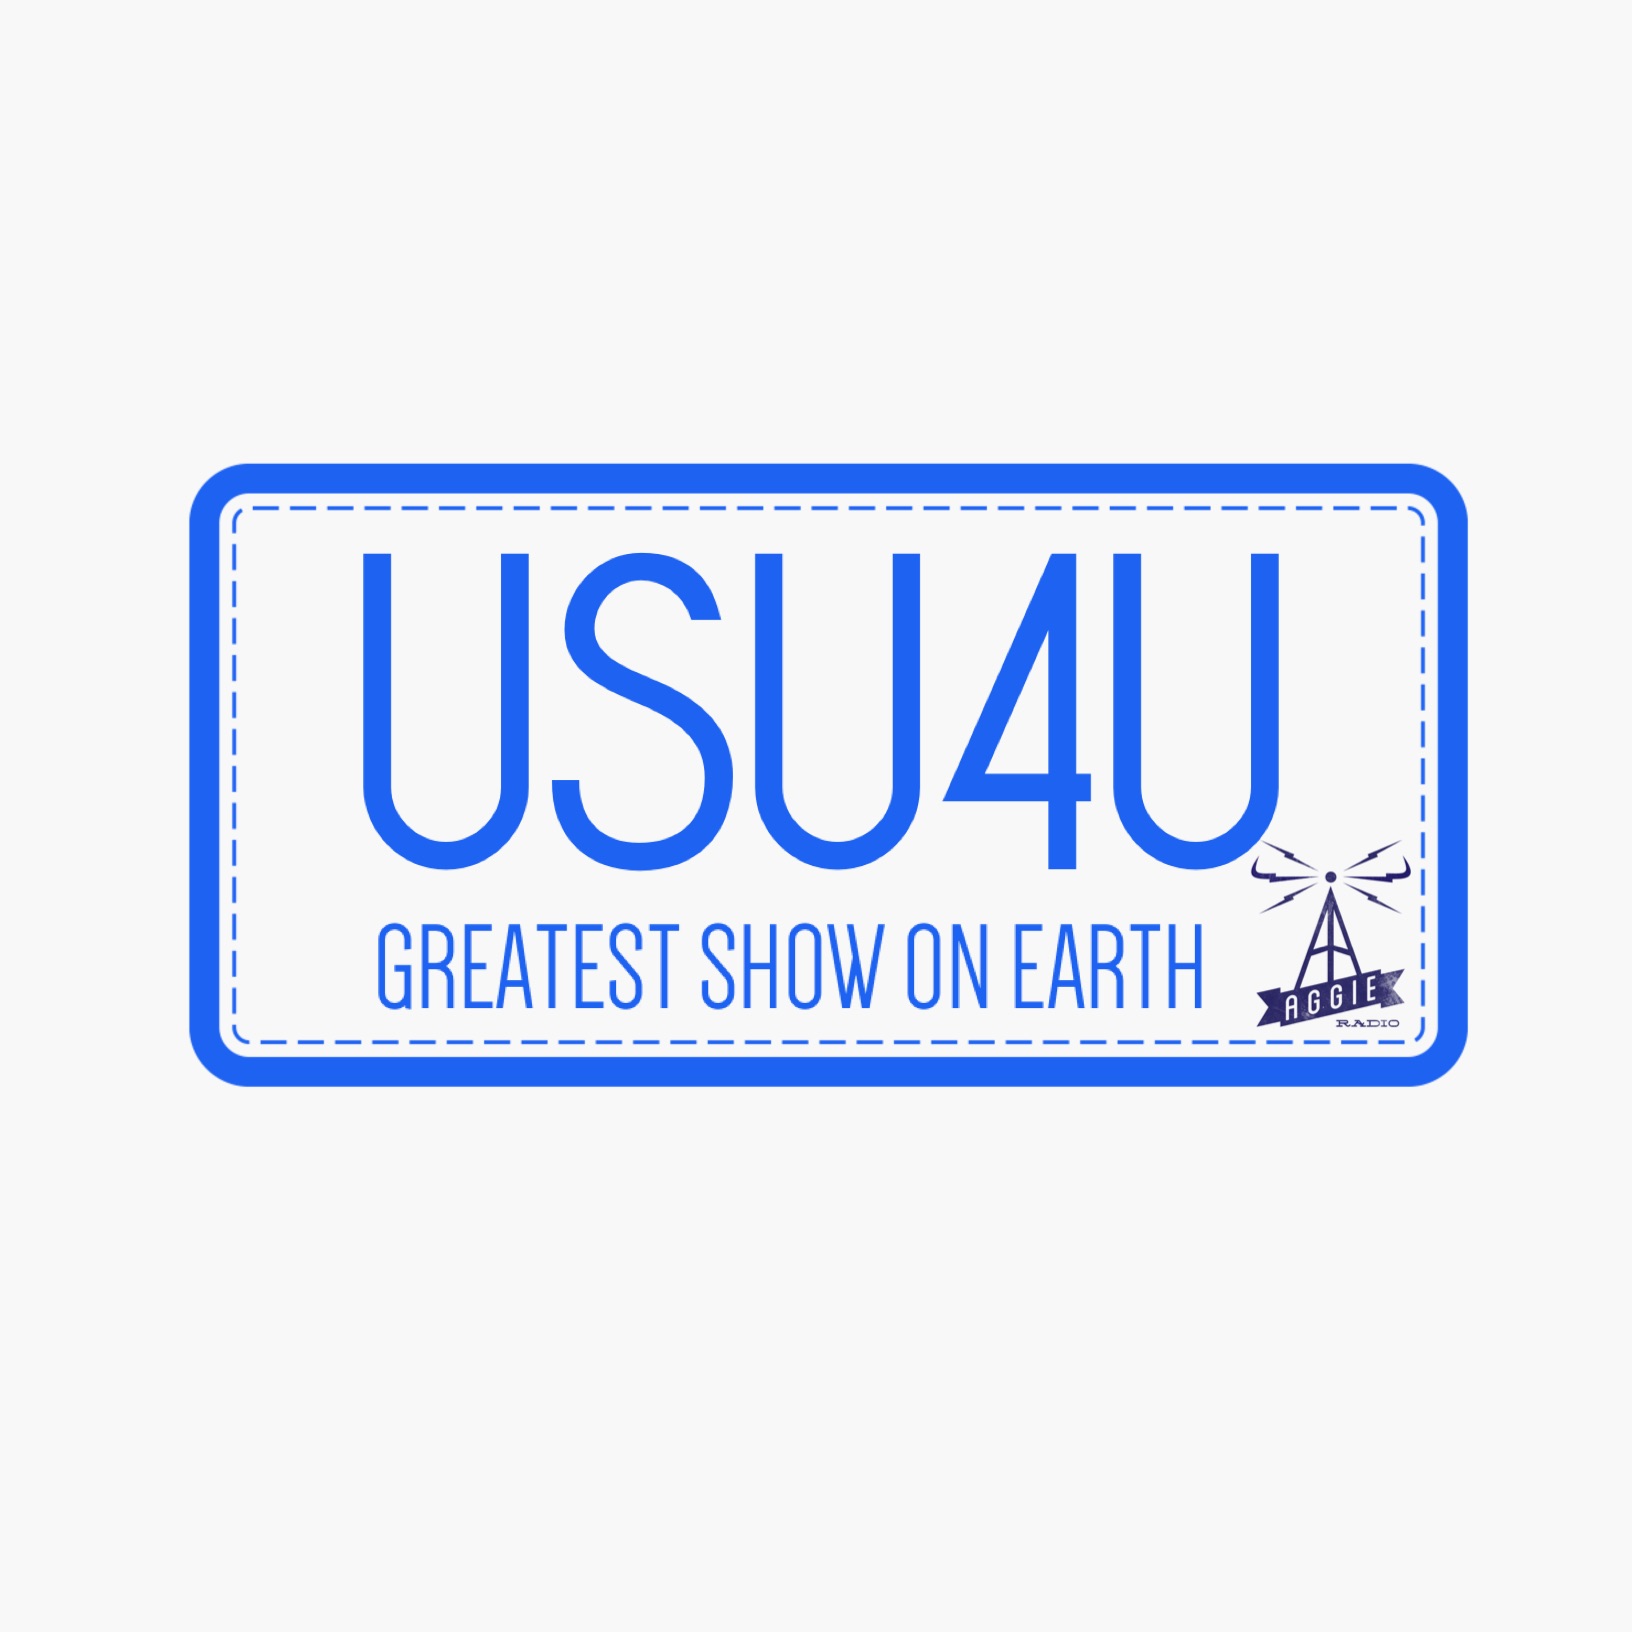 USU4U – 11.16.15